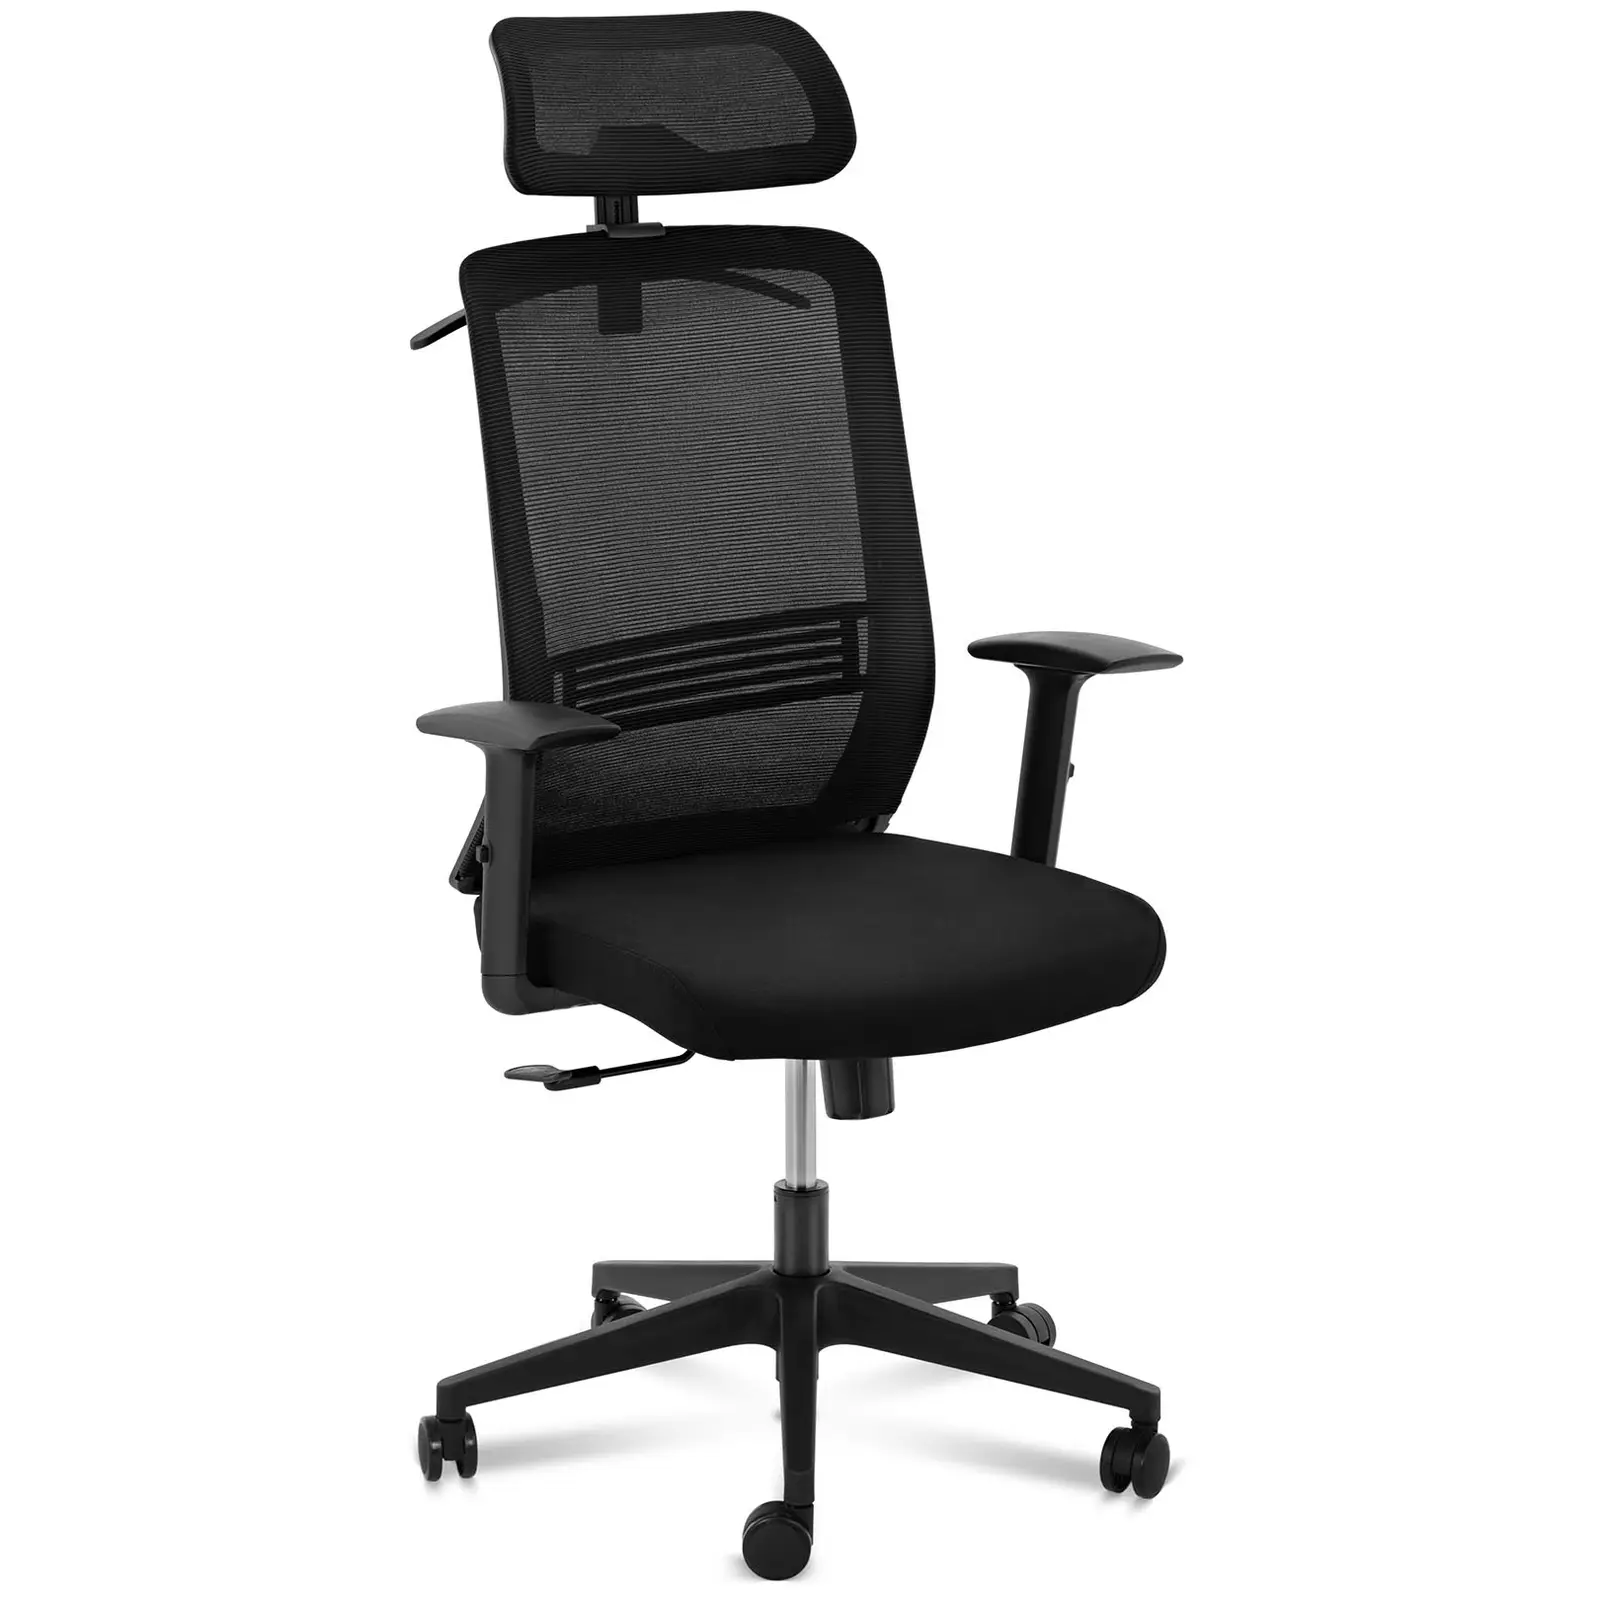 Chaise de bureau - dossier en filet - appuie-tête - siège de 50 x 61 cm - jusqu'à 150 kg - noir